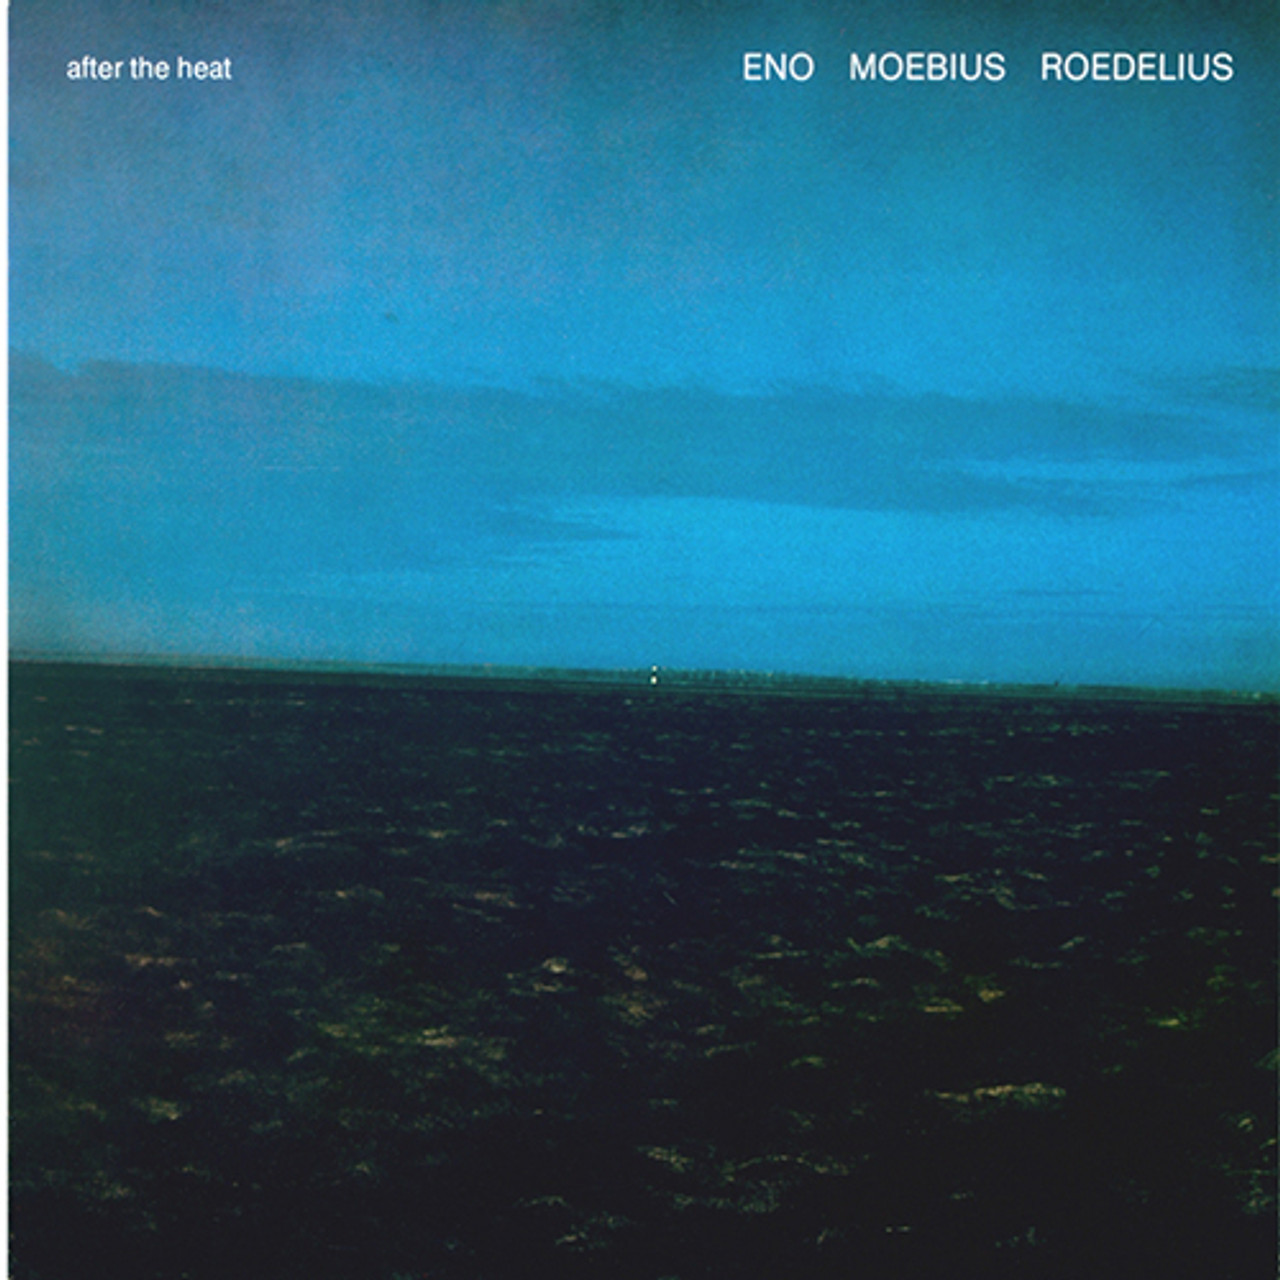 réédition vinyle BUREAU B ENO MOEBIUS ROEDELIUS - AFTER THE HEAT - LP